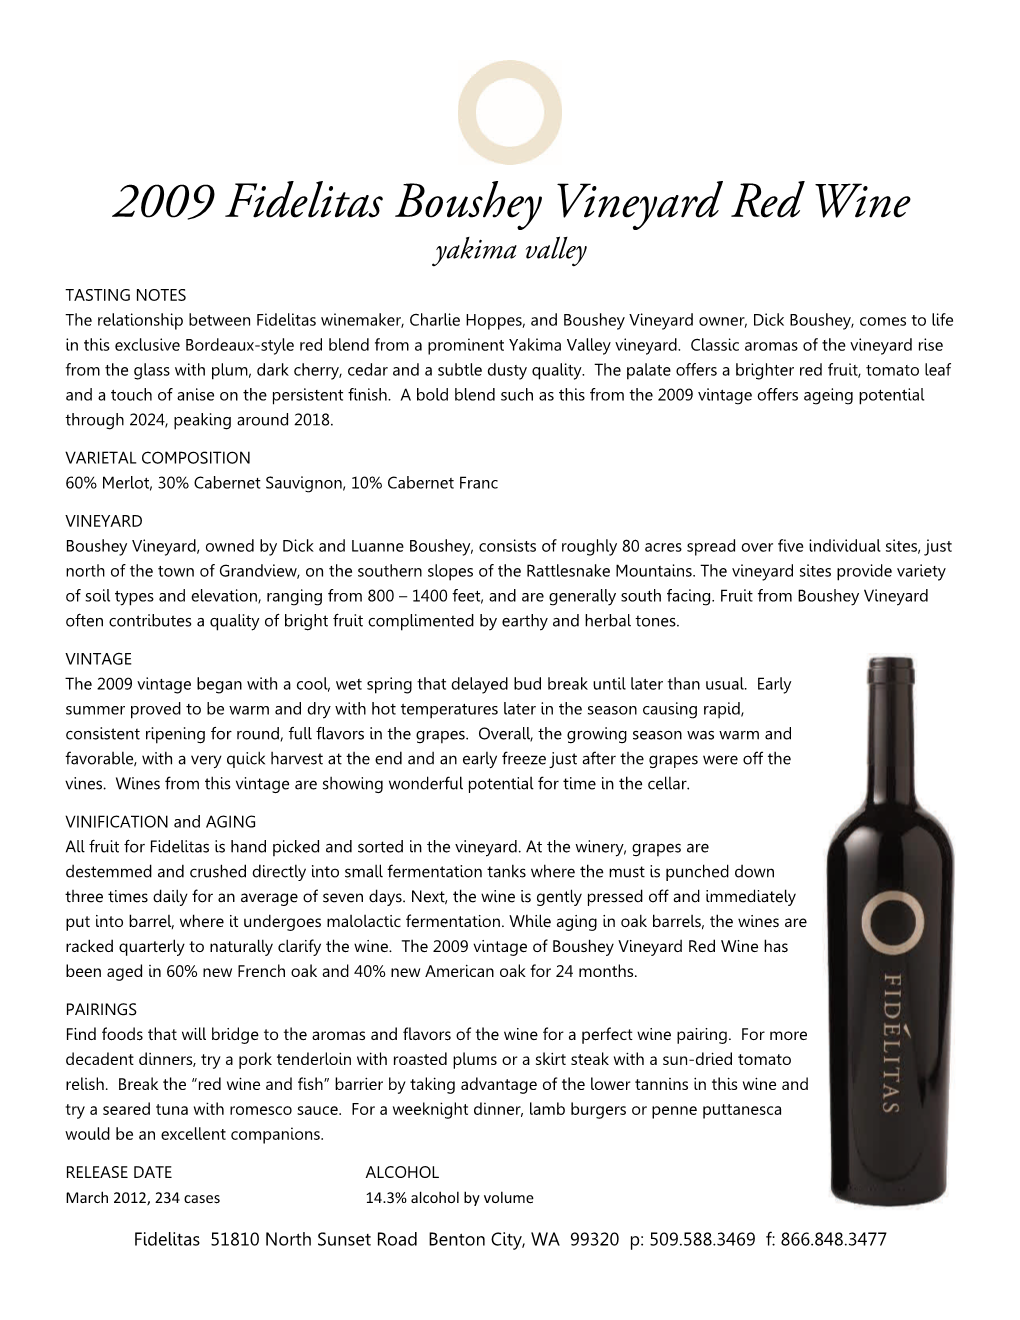 2009 Boushey Vineyard Red Wine